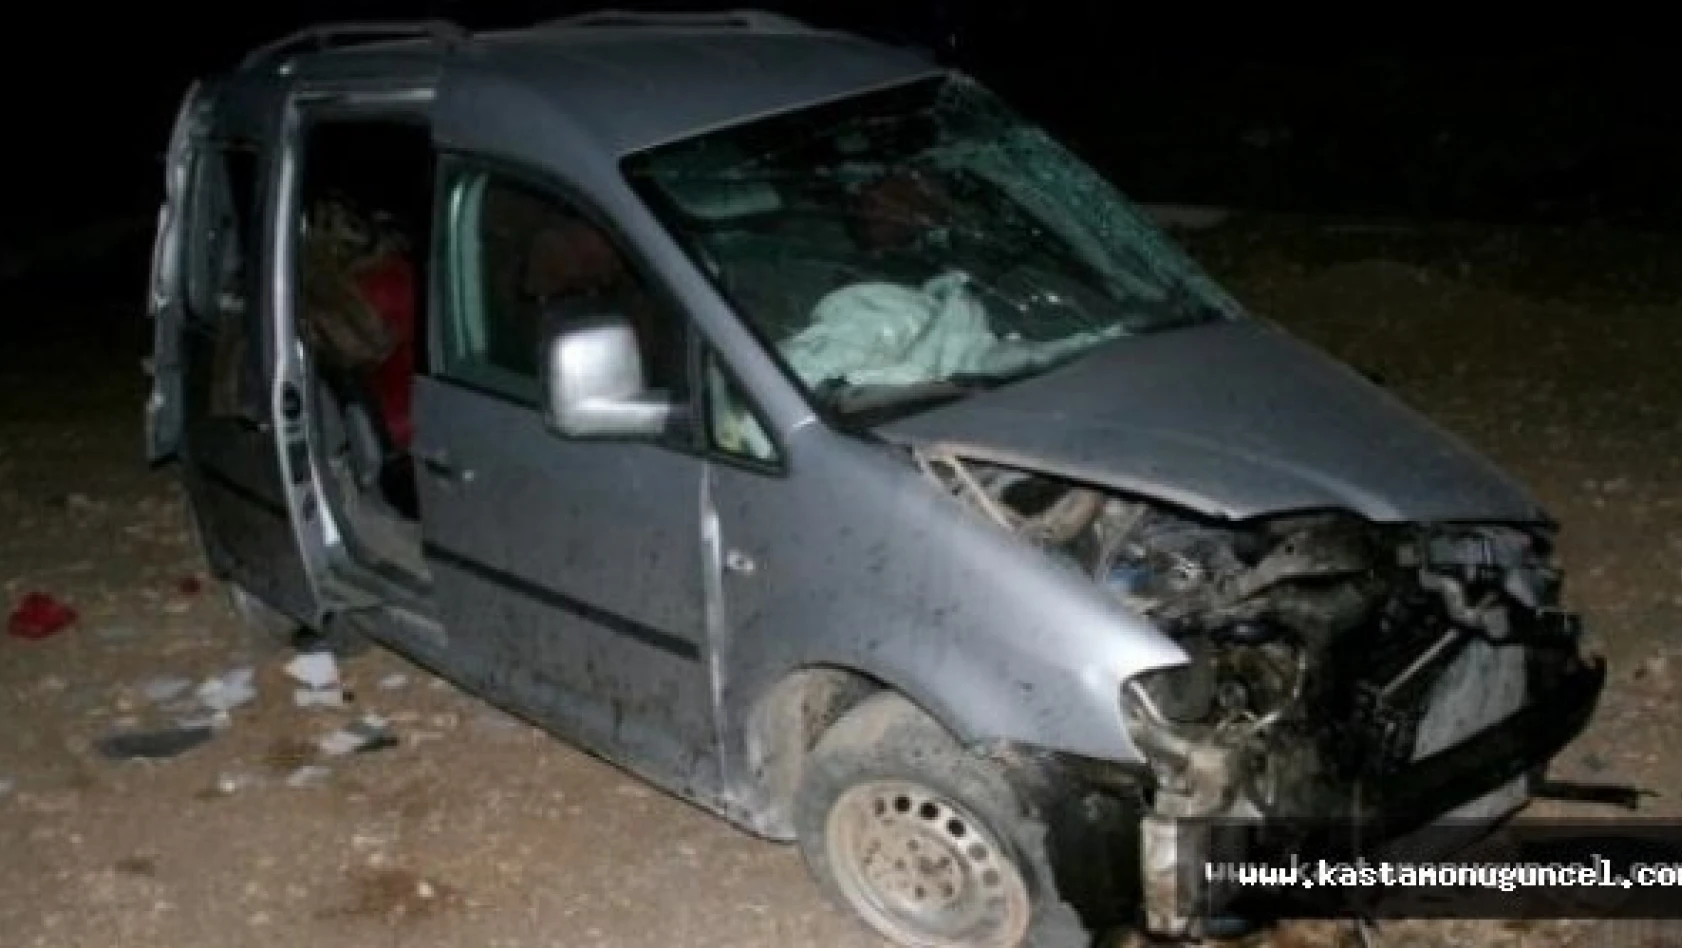 Kastamonu'da Trafik Kazalarında 12 Kişi Öldü